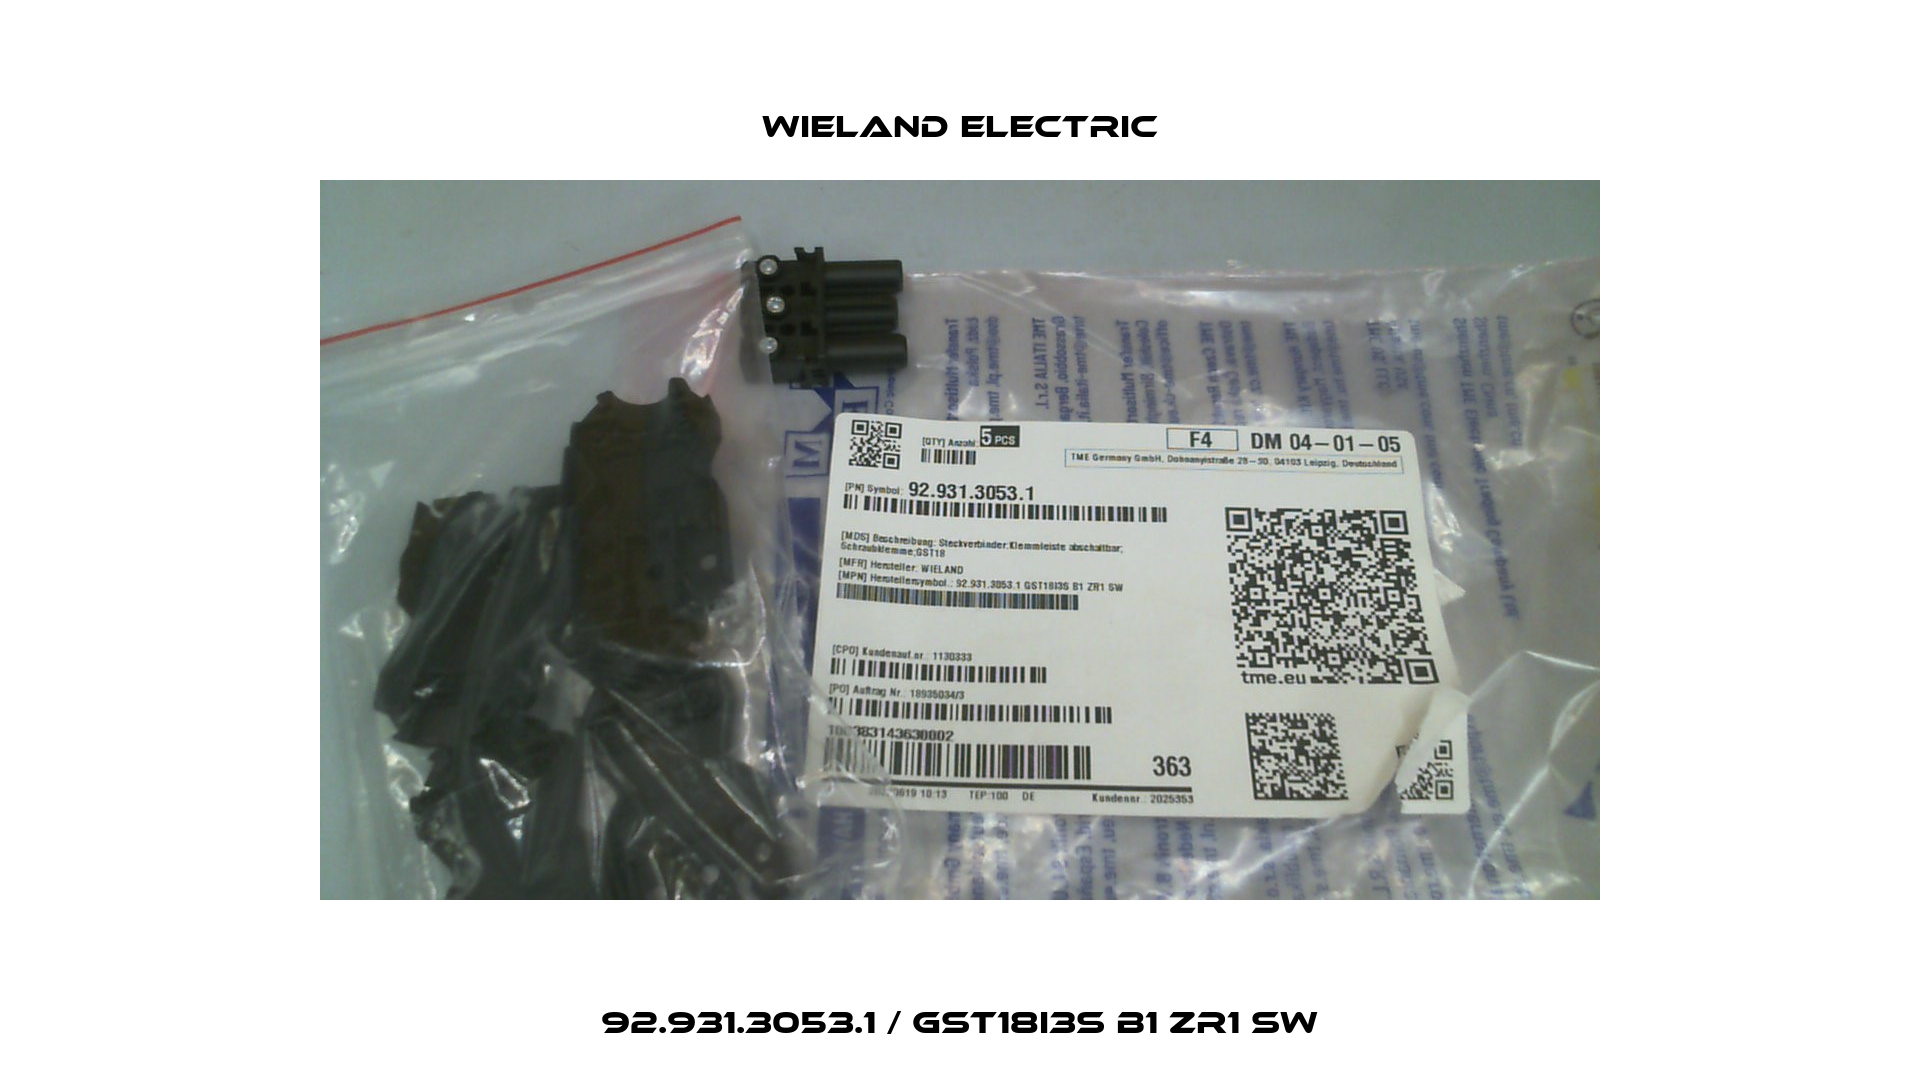 92.931.3053.1 / GST18I3S B1 ZR1 SW Wieland Electric